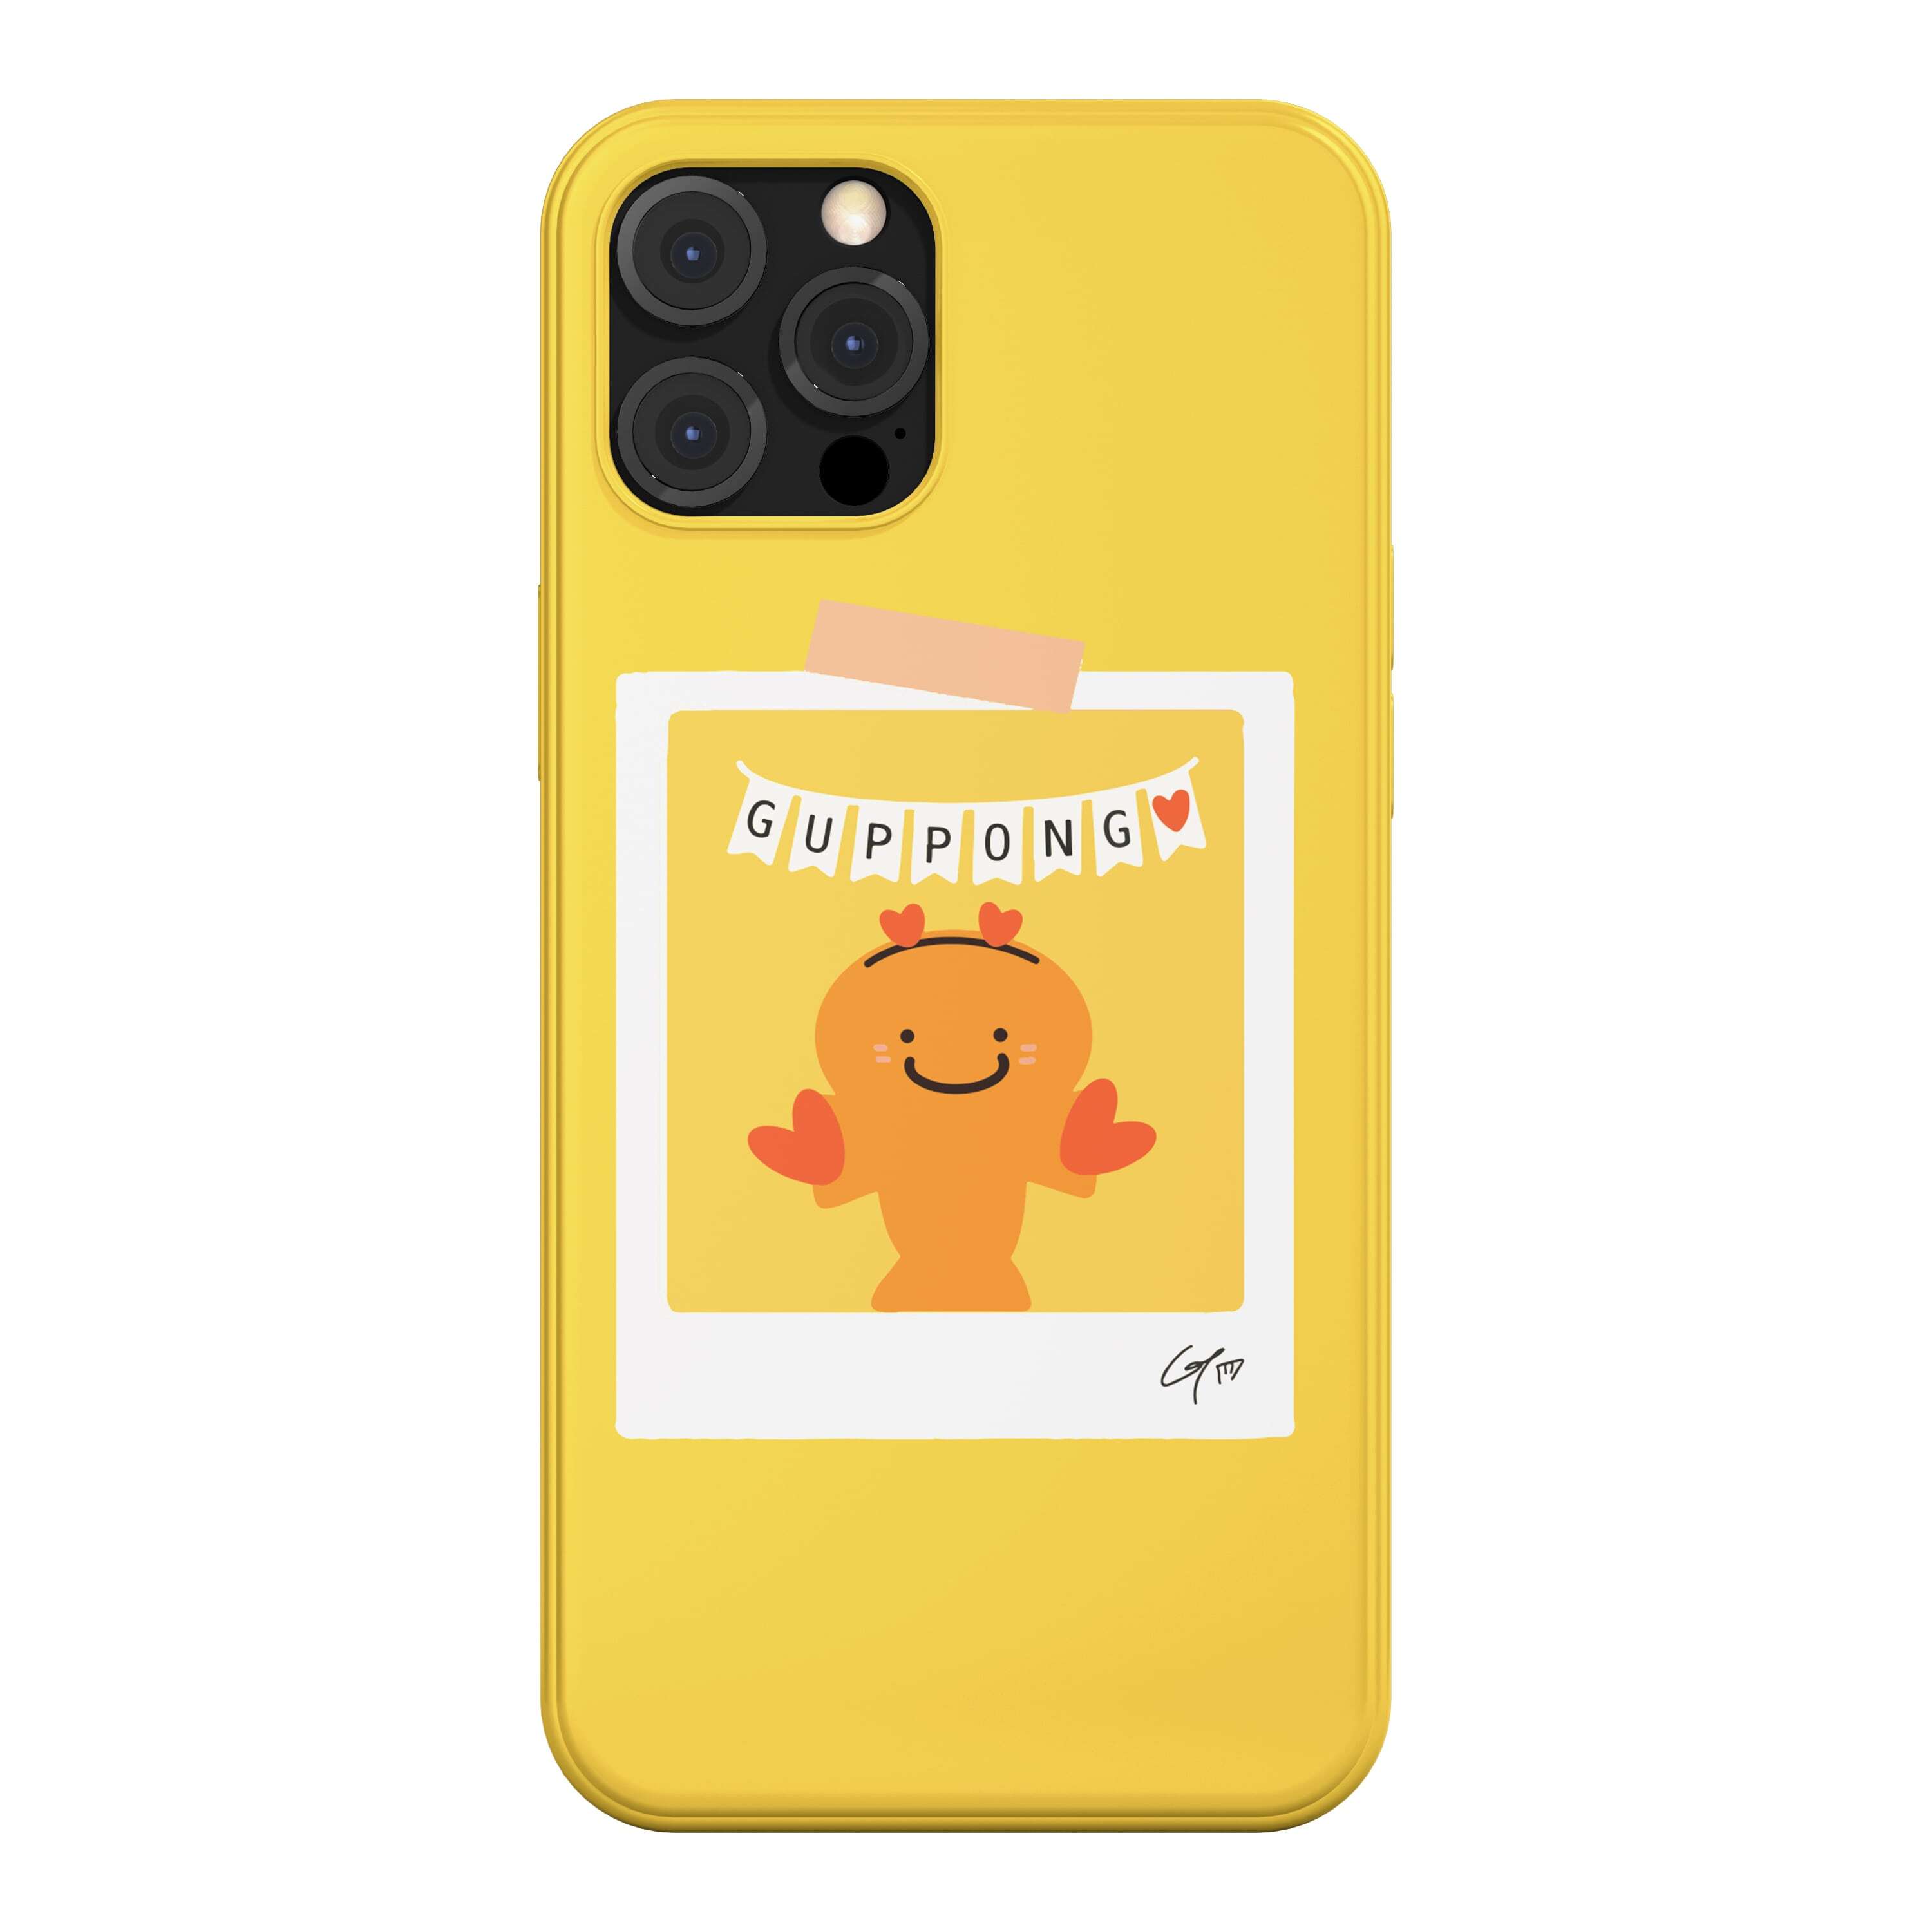 韓国 スマホケース [GUPPY] かわいい 癒やし系 ゆるキャラ デザイナーズ iPhone Android対応 携帯カバー ポップコーン ハート 写真 イエロー (GP05)